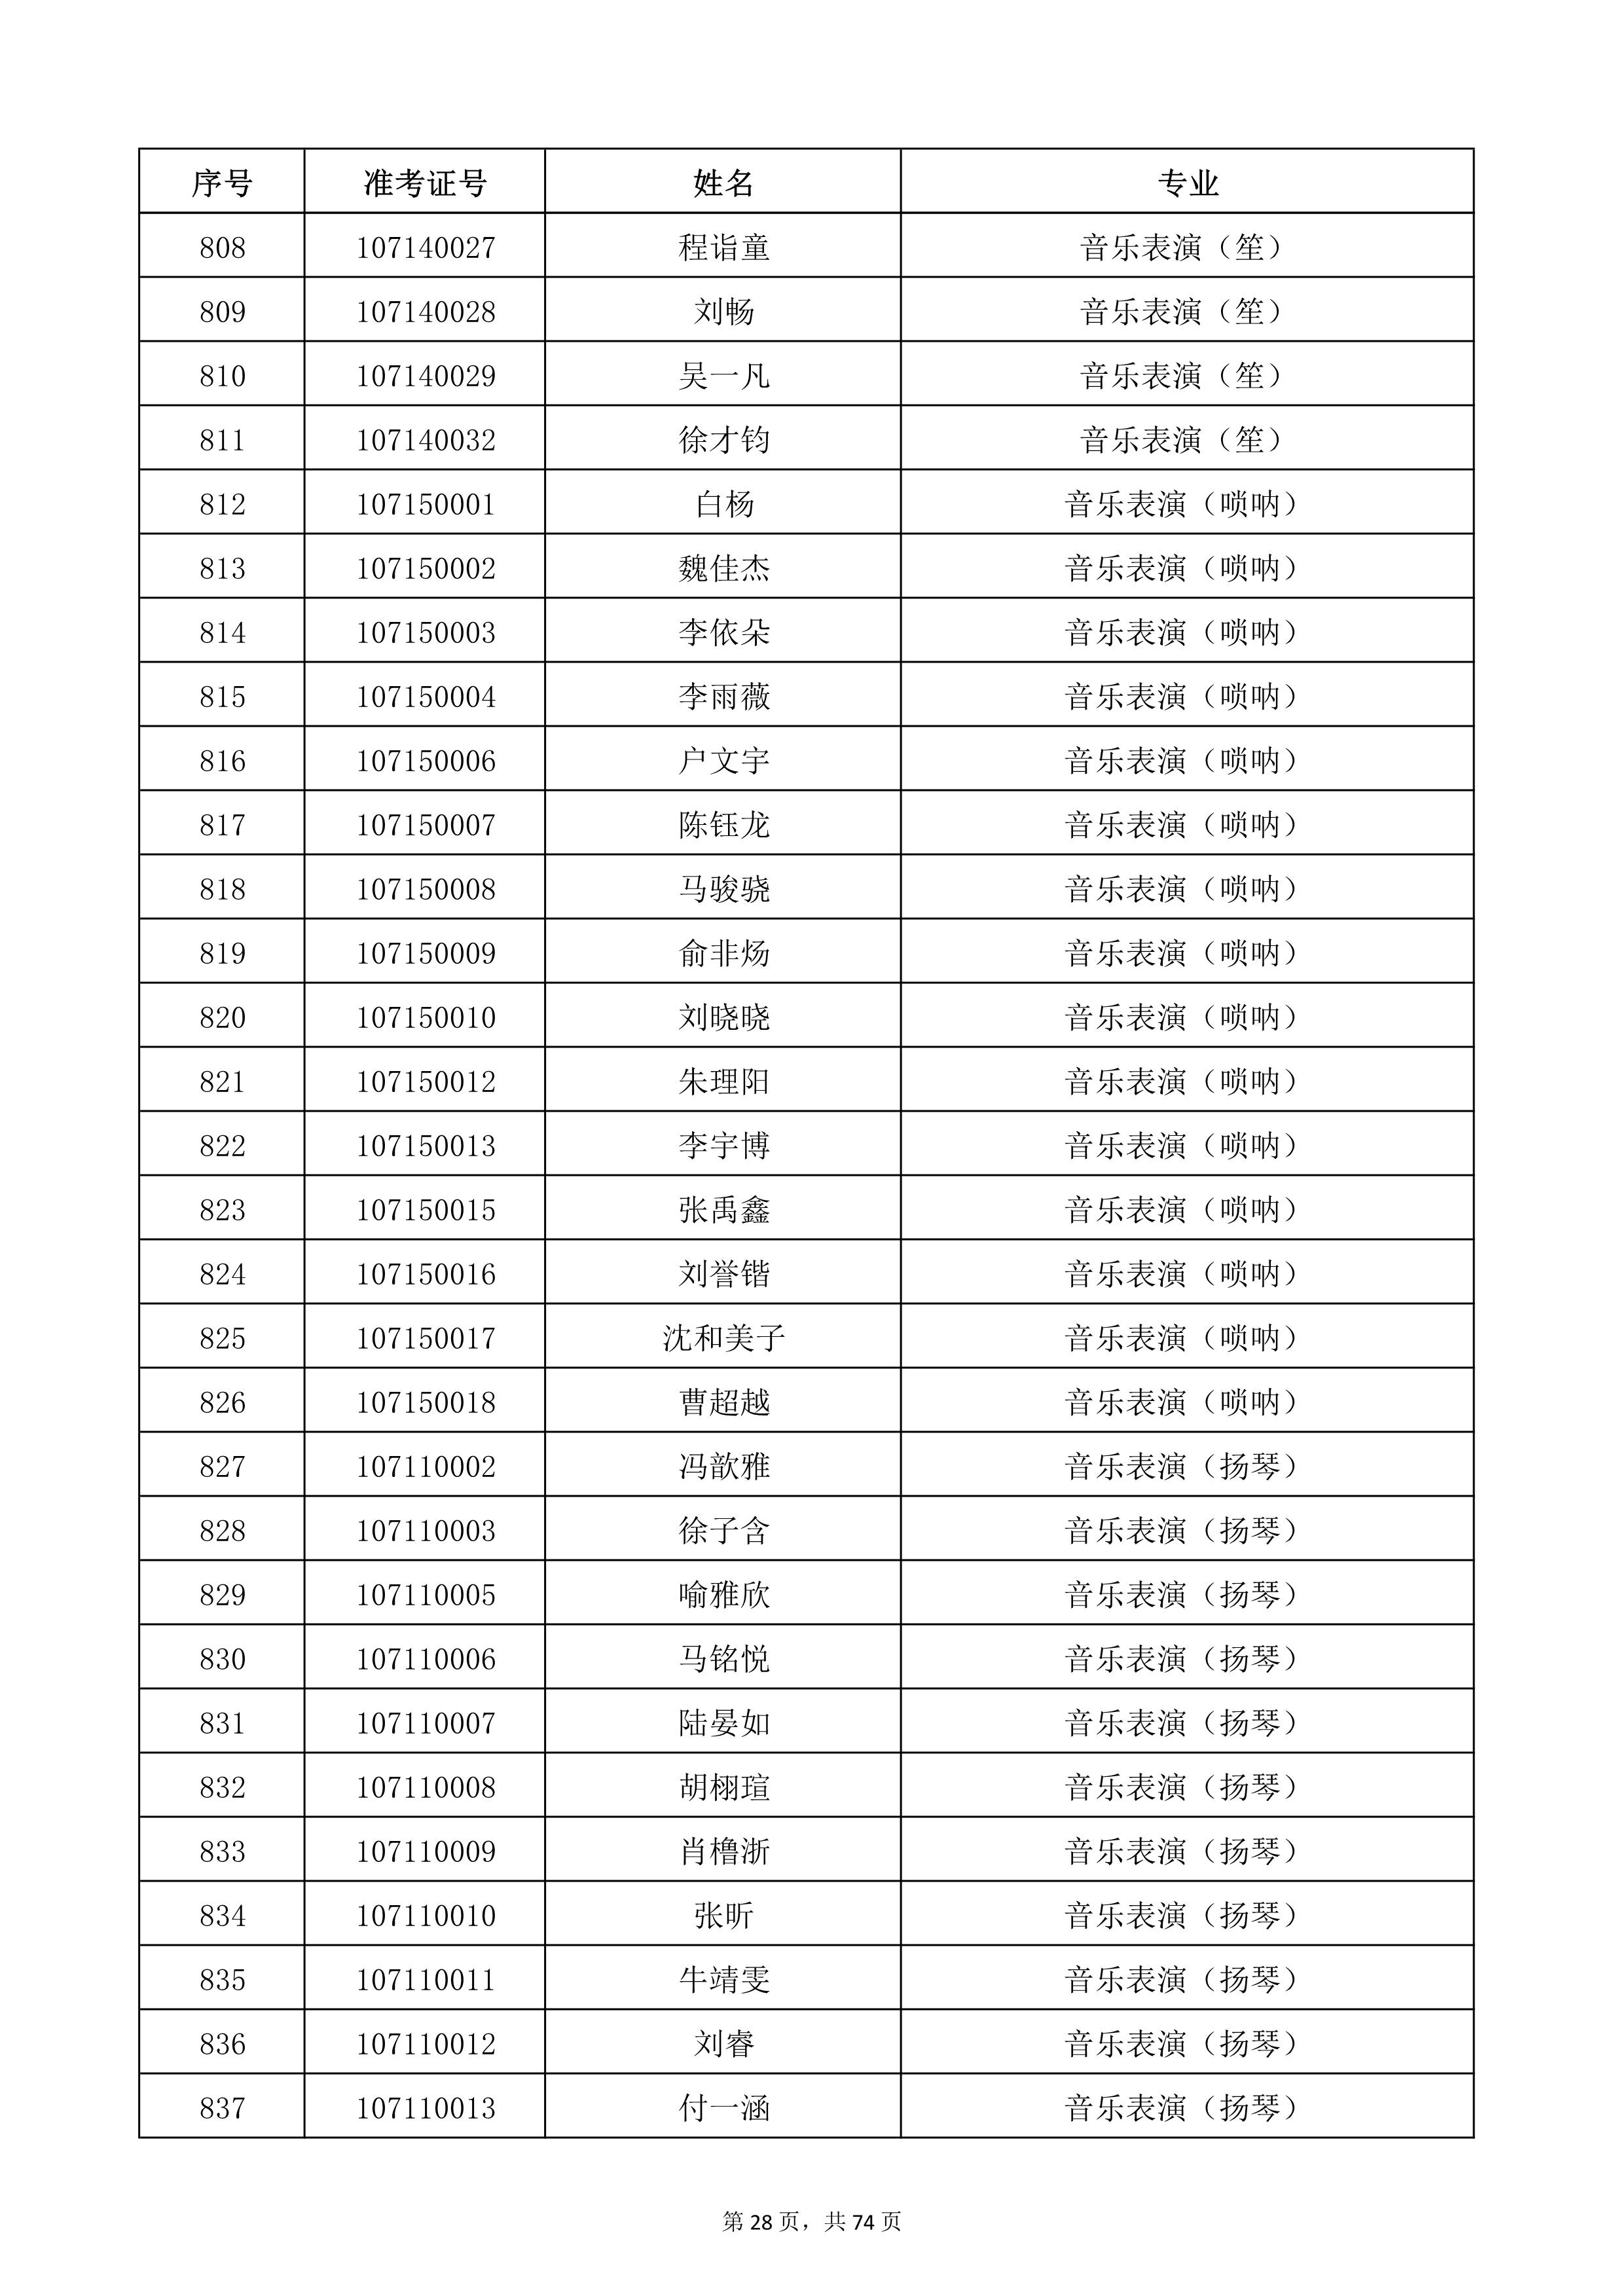 天津音乐学院2022年本科招生考试复试名单_28.jpg